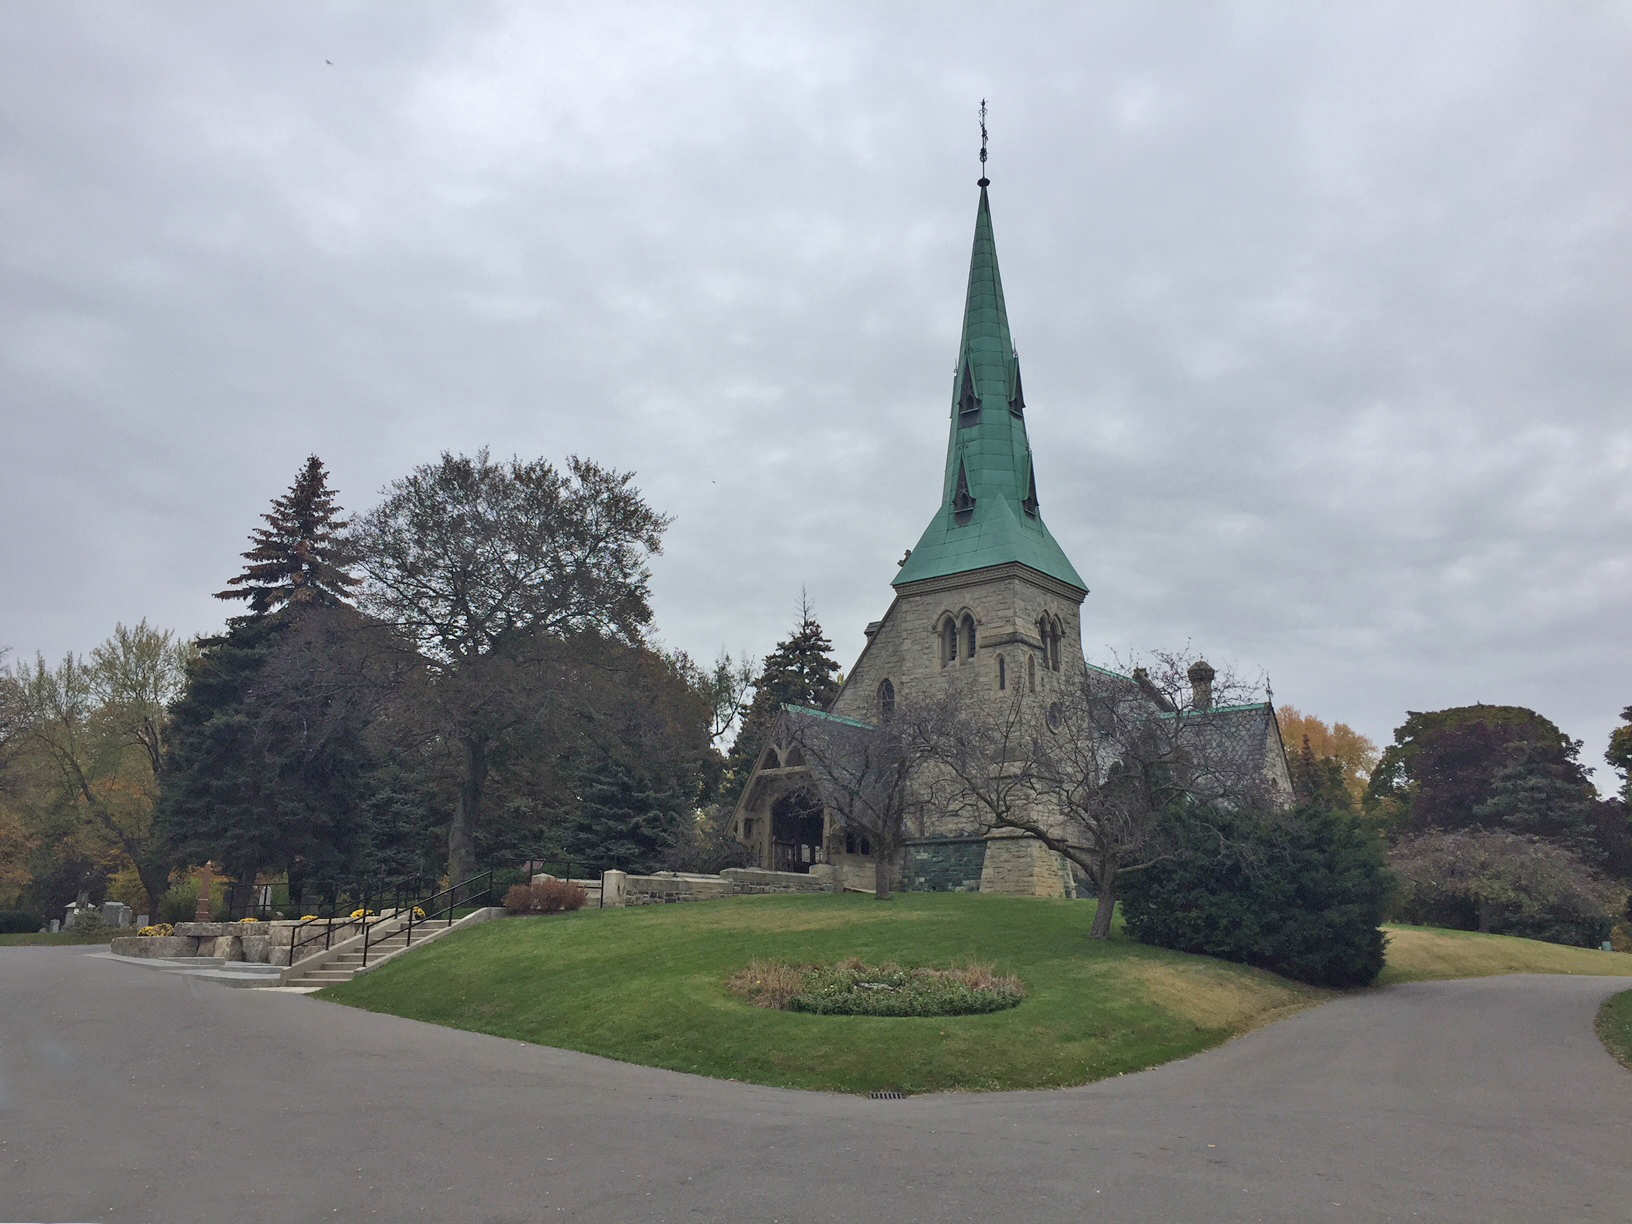 Une photographie de l'église anglicane St. James 'the Less' à Toronto, en Ontario. L'église en pierre a un grand clocher en bronze qui a vieilli en vert. 